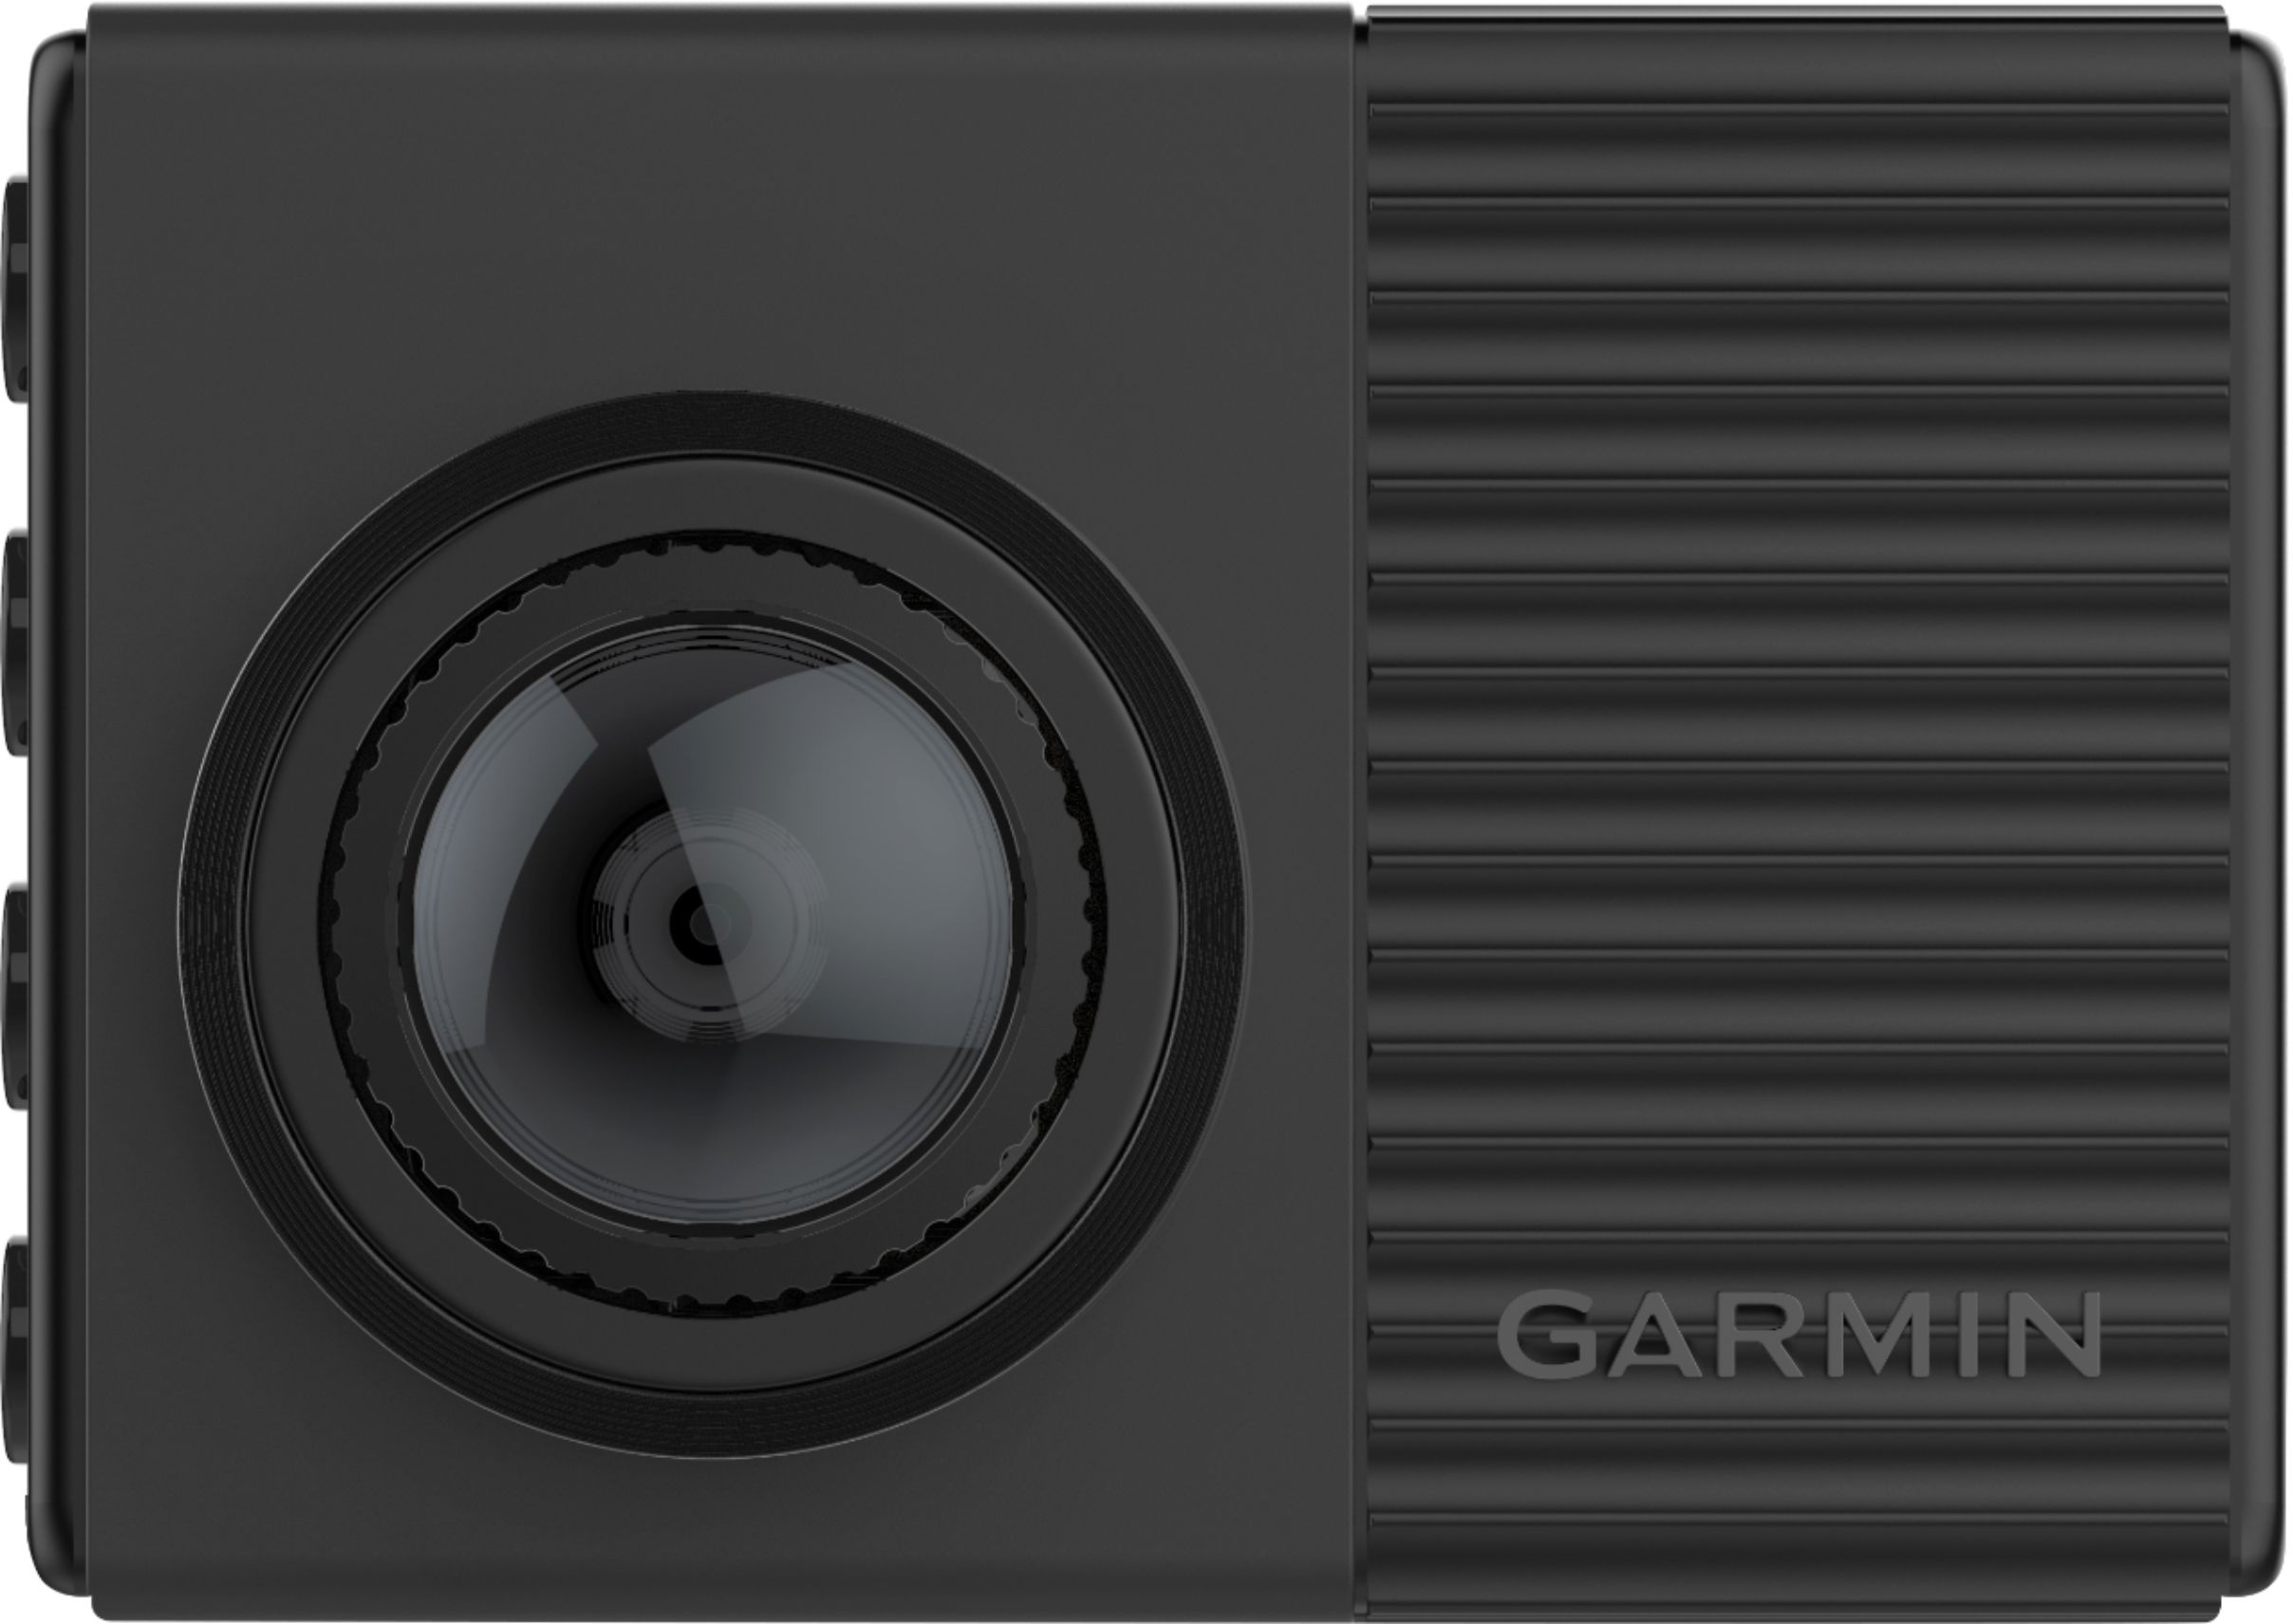 Garmin Dash Cam 010-02231-05 - Best Buy